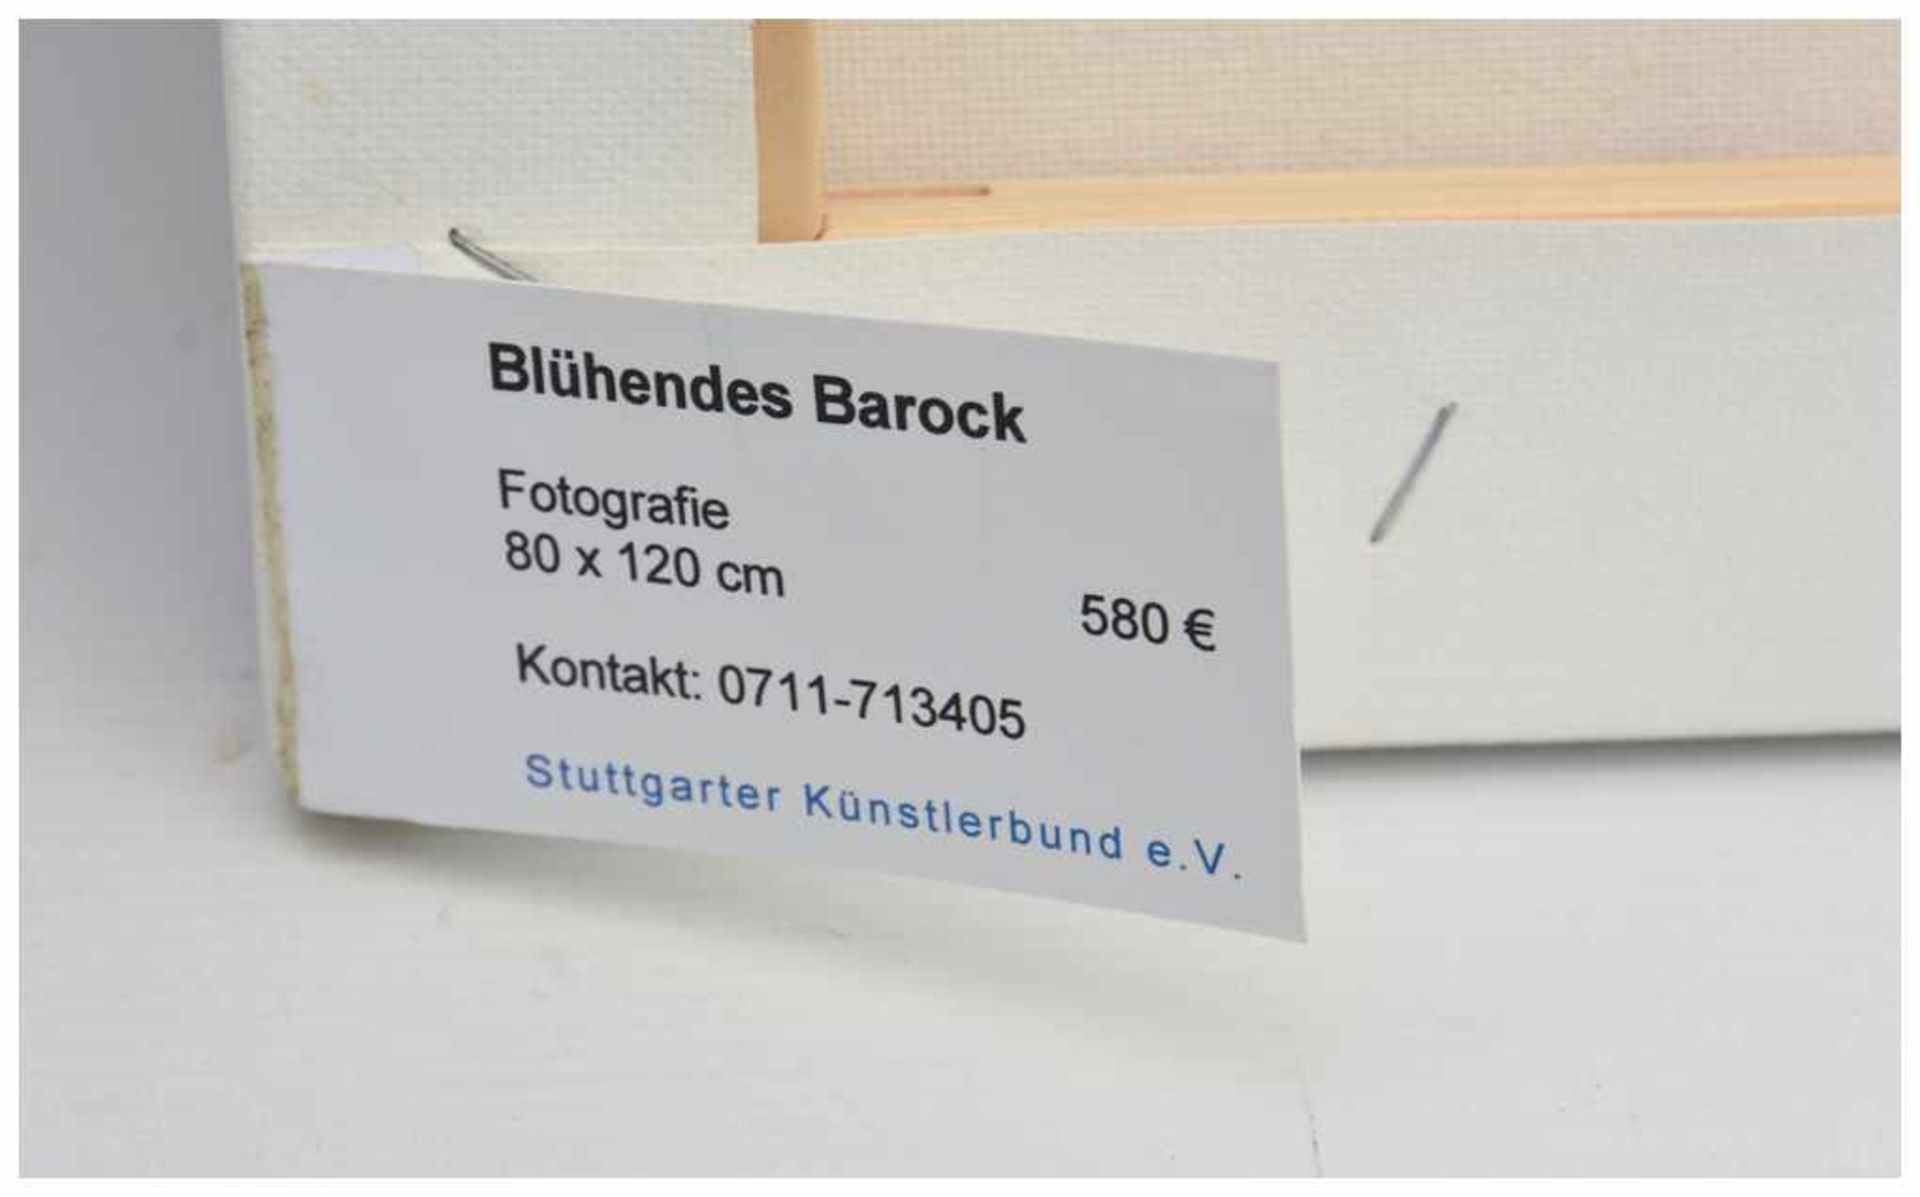 GÜNTHER BURKHARDT,"Blühendes Barock", Fotodruck auf Leinwand, 21. limitiert, 21. Jahrhundert Zu - Bild 3 aus 3